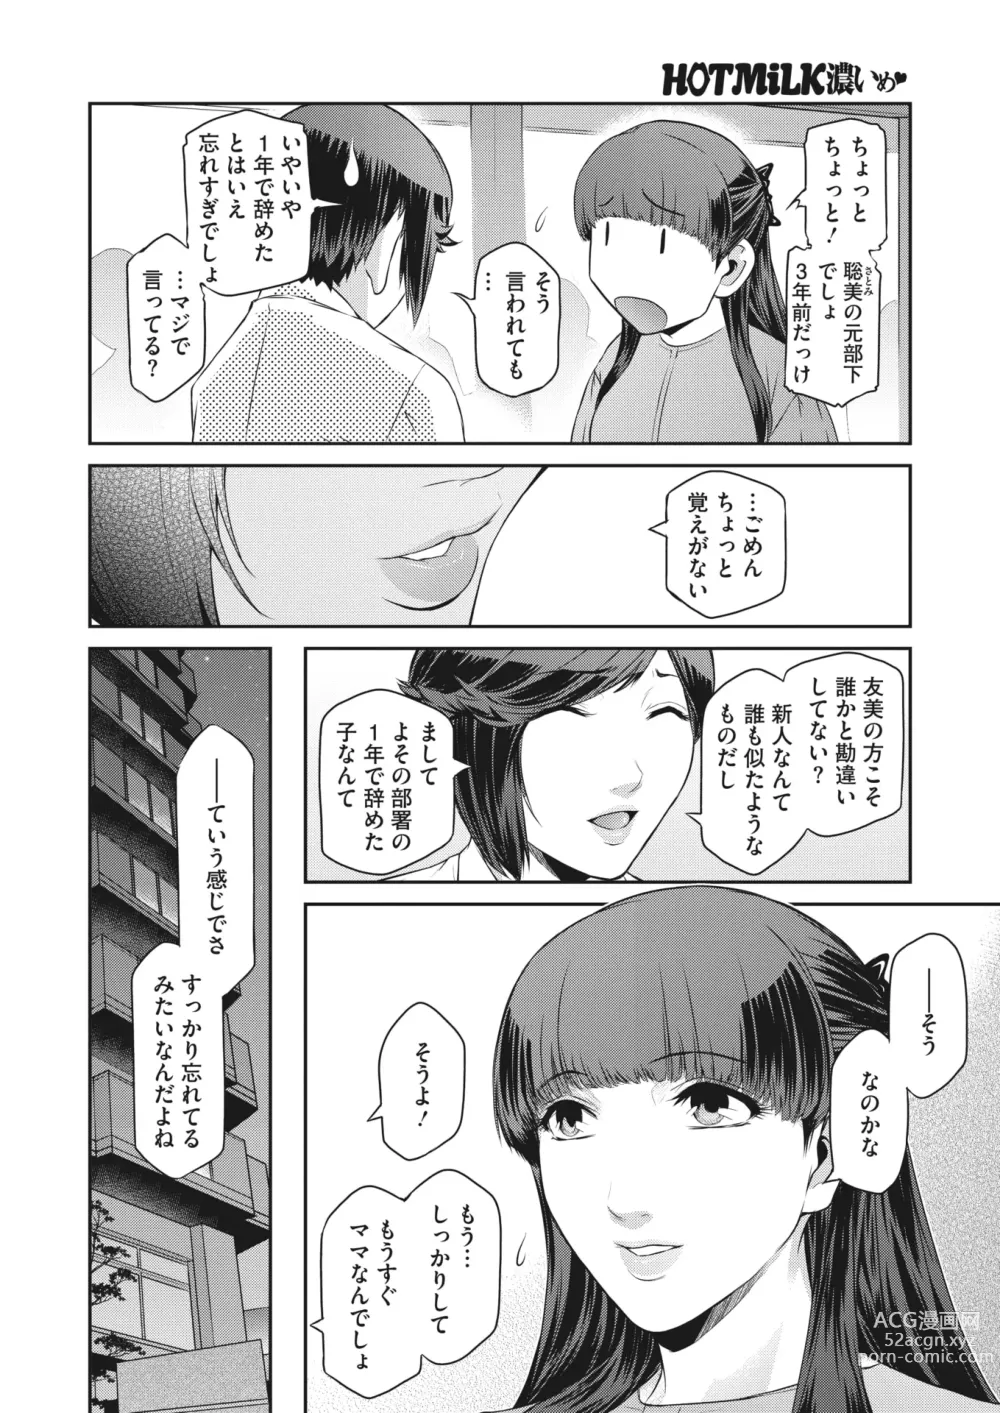 Page 9 of manga COMIC HOTMiLK Koime Vol. 41